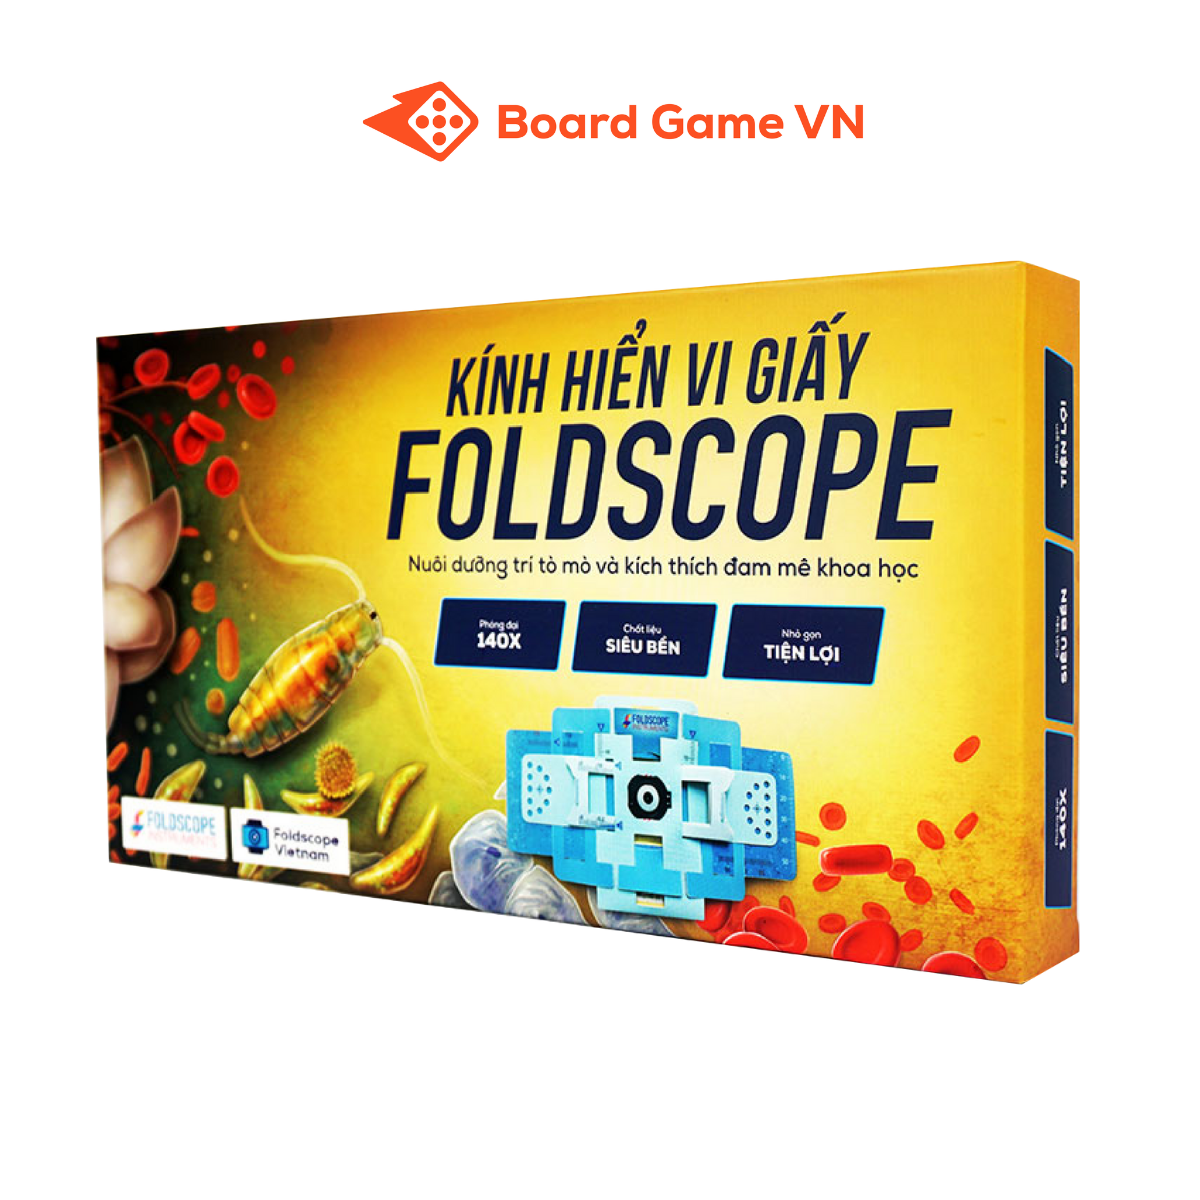 Kính Hiển Vi Giấy Foldscope - Khám phá vi thế giới diệu kỳ